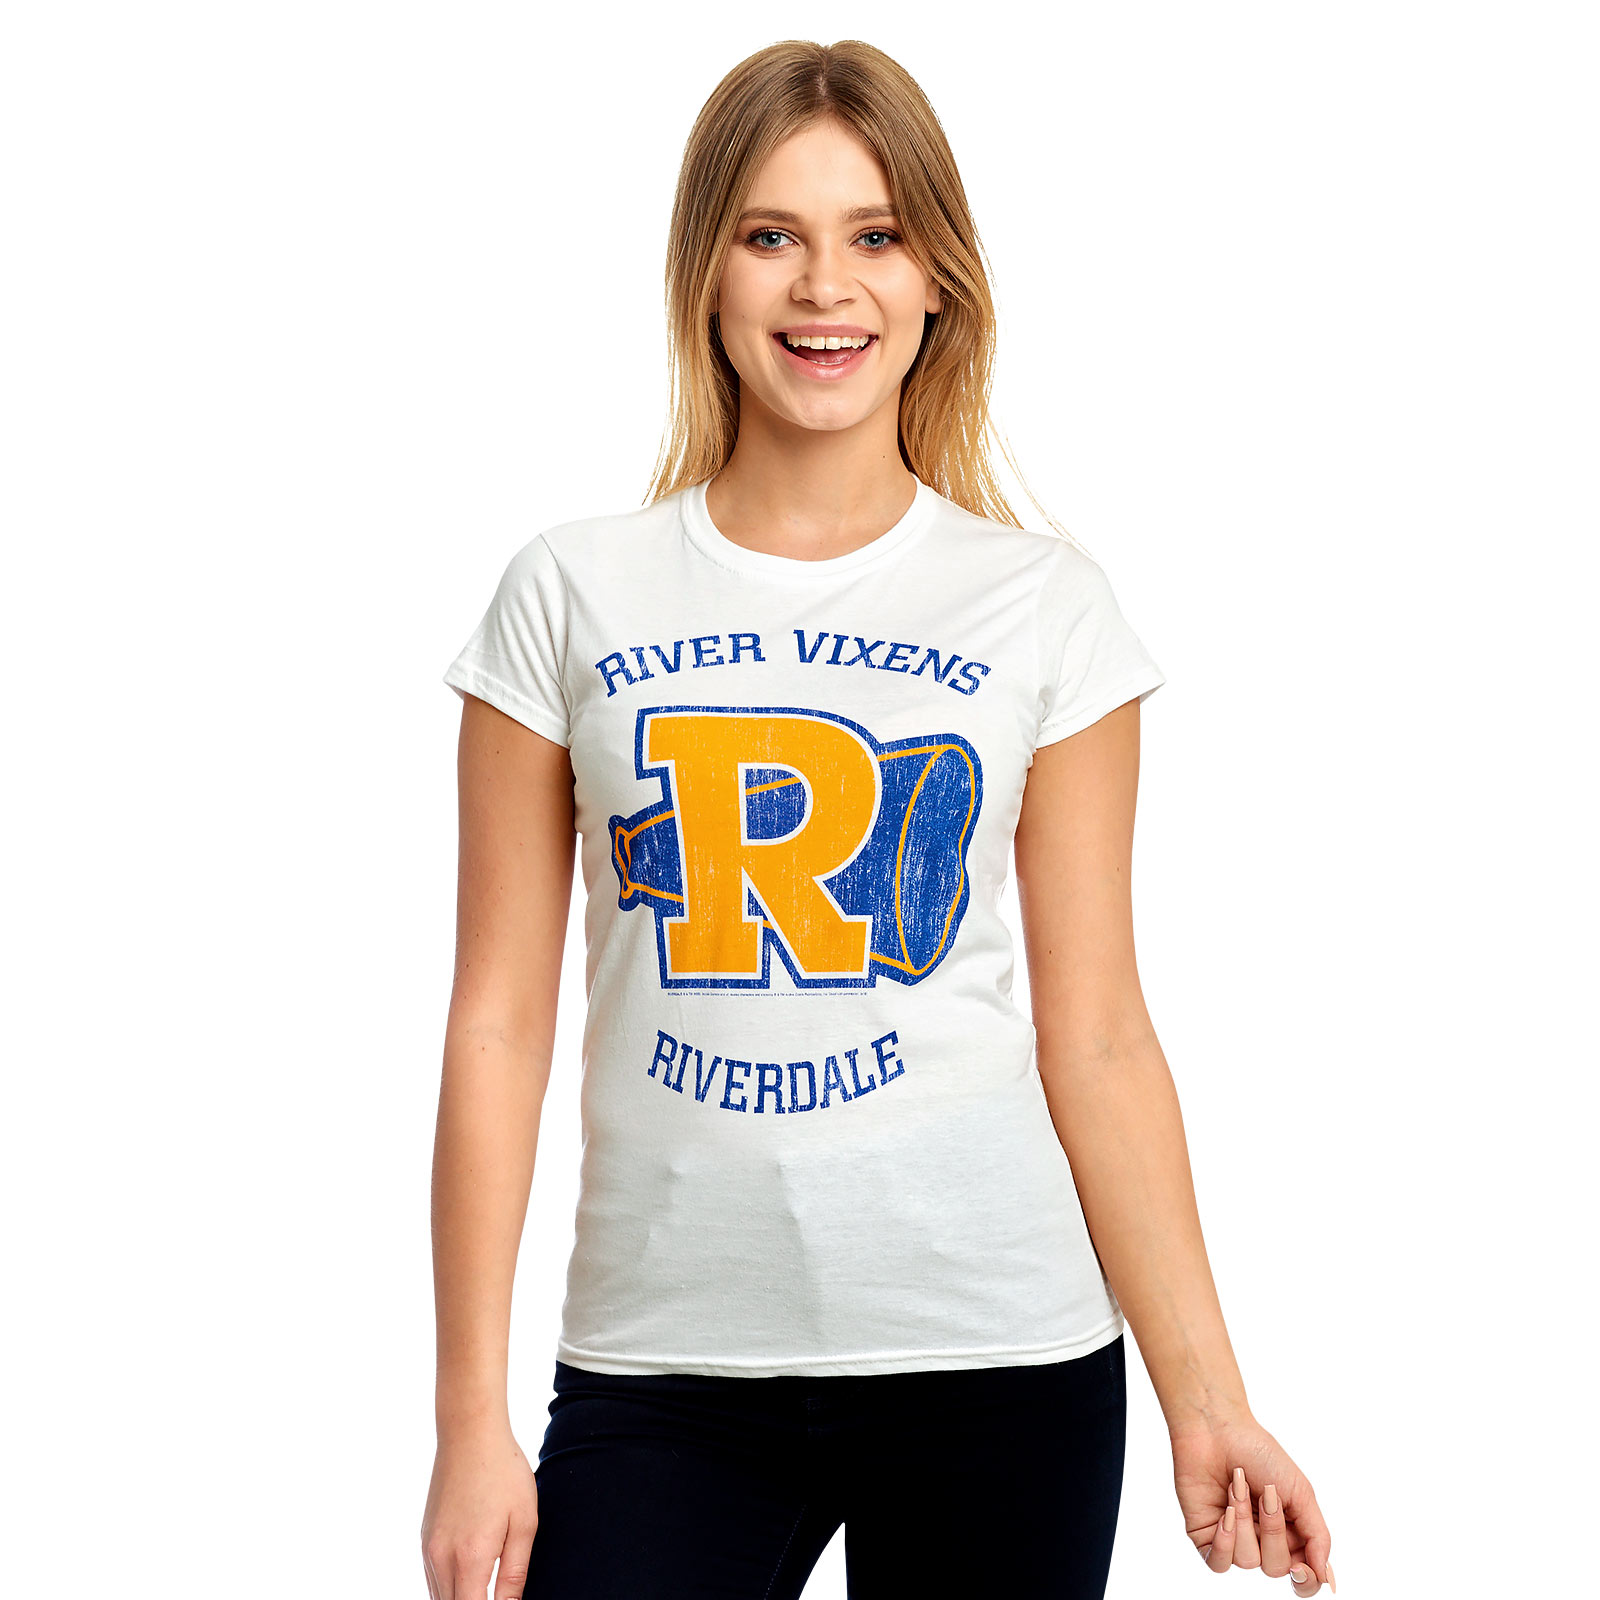 Riverdale - River Vixens T-Shirt Damen weiß